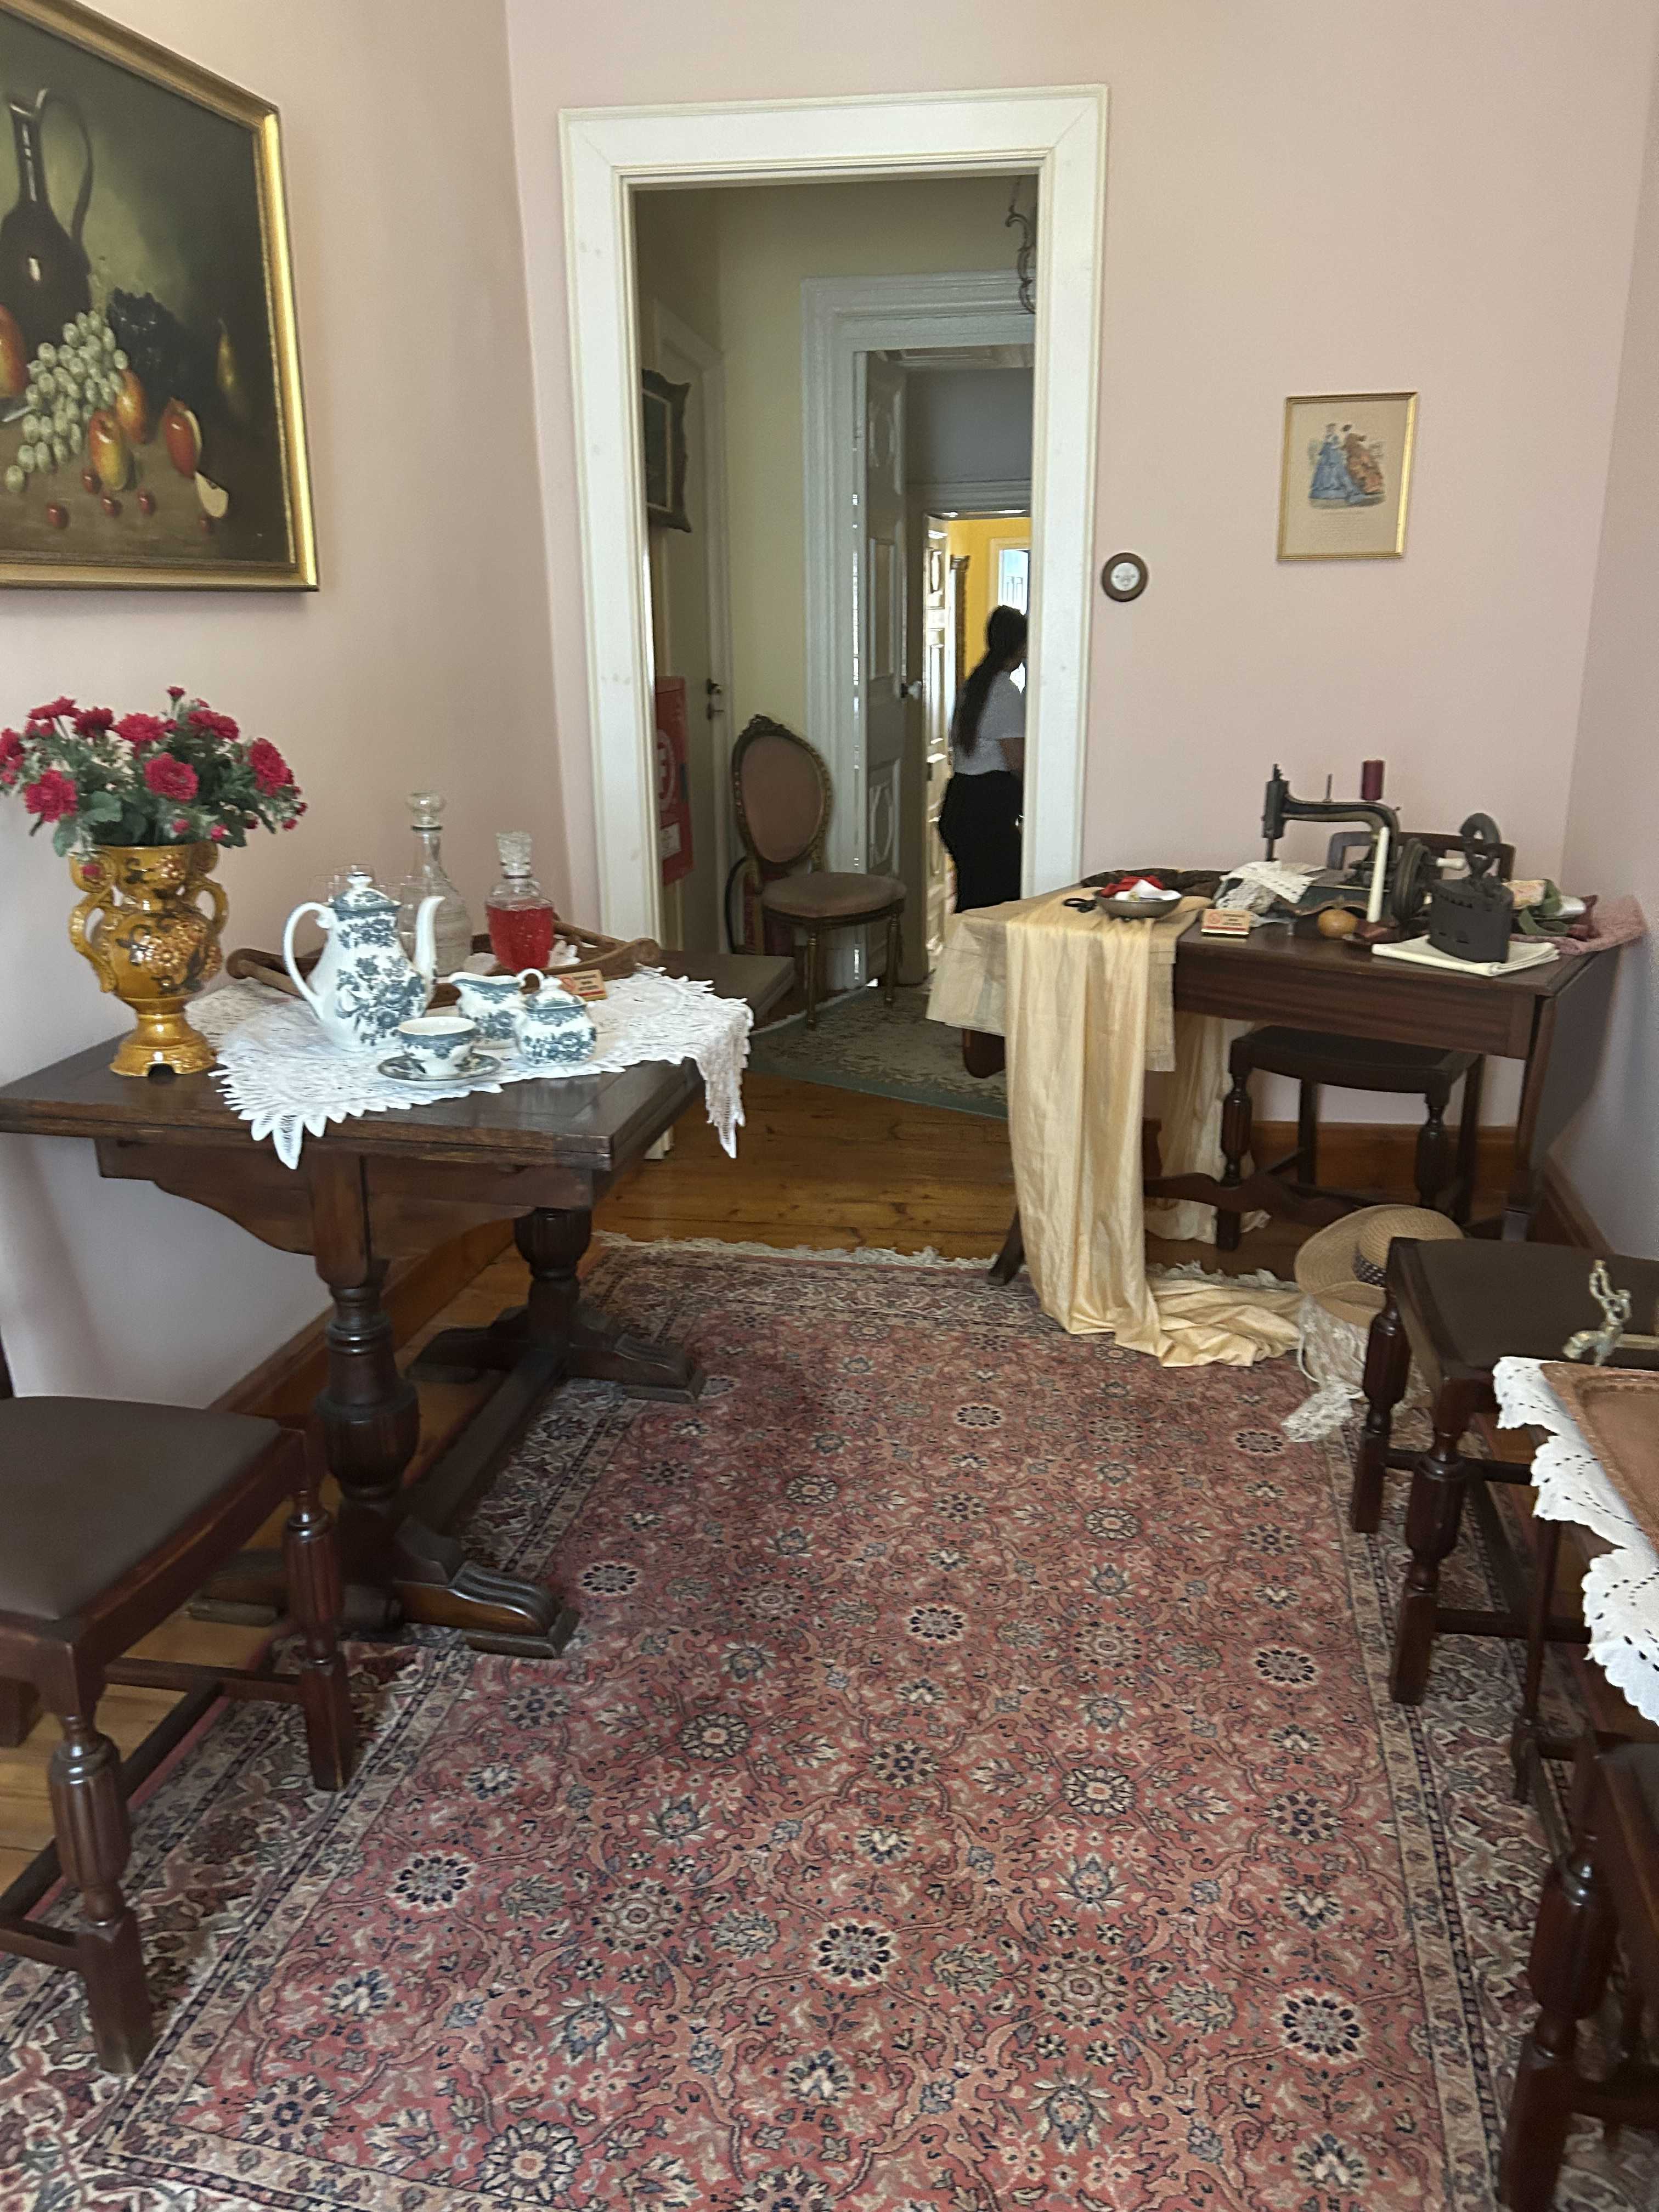 Casa Parlante Museum, Corfu